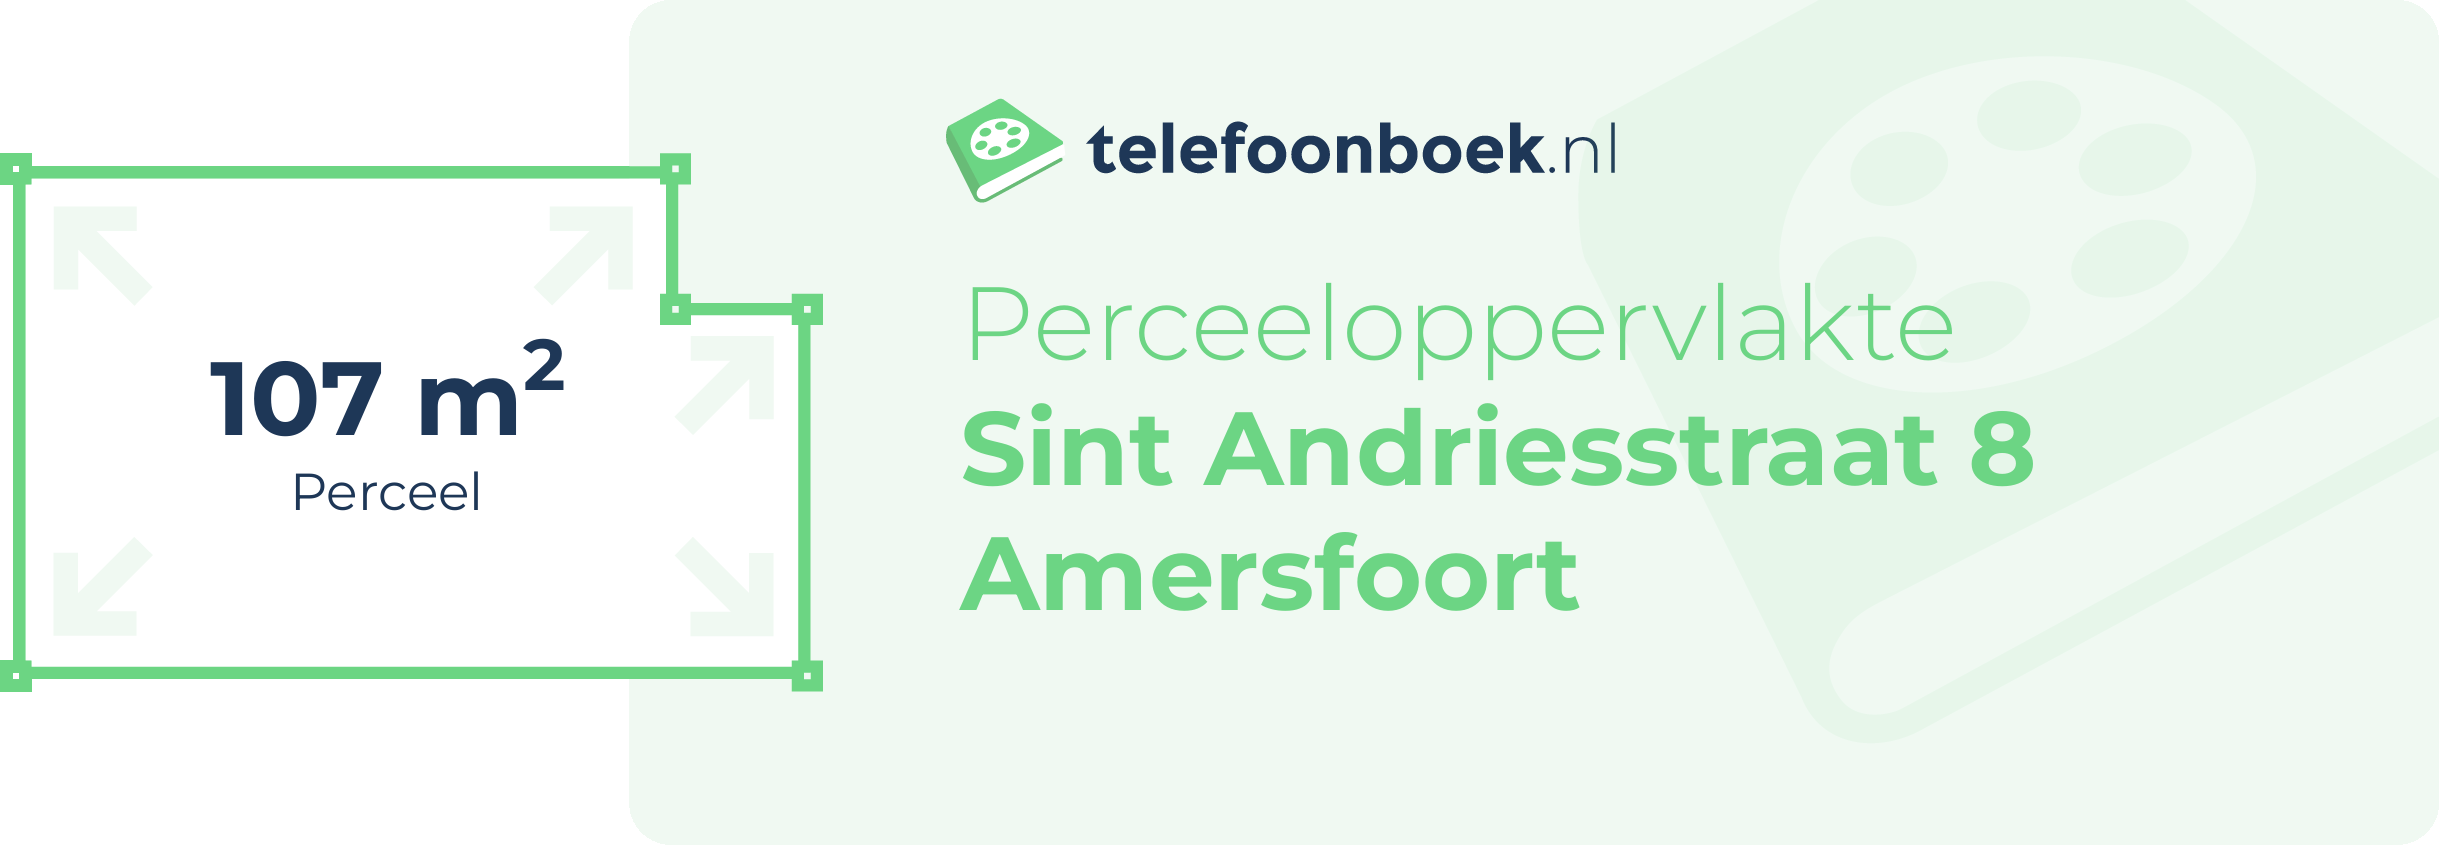 Perceeloppervlakte Sint Andriesstraat 8 Amersfoort